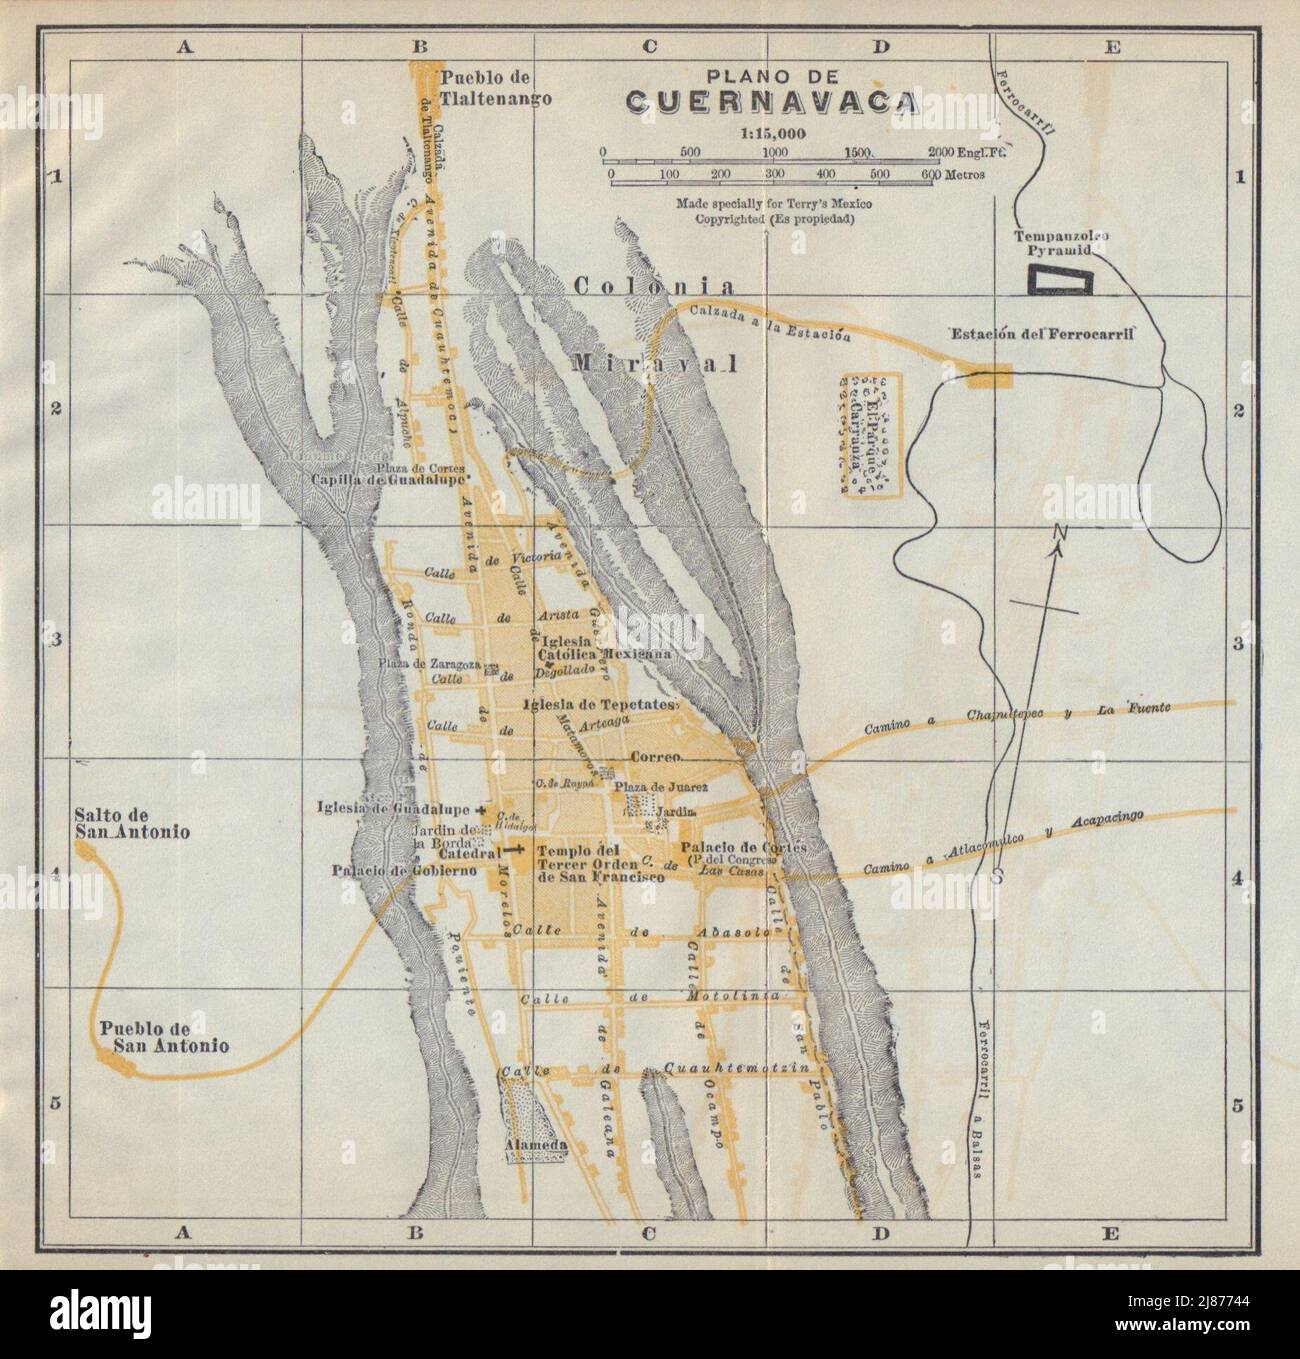 Plano de CUERNAVACA, Mexico. Mapa de la ciudad. City/town plan 1938 old Stock Photo